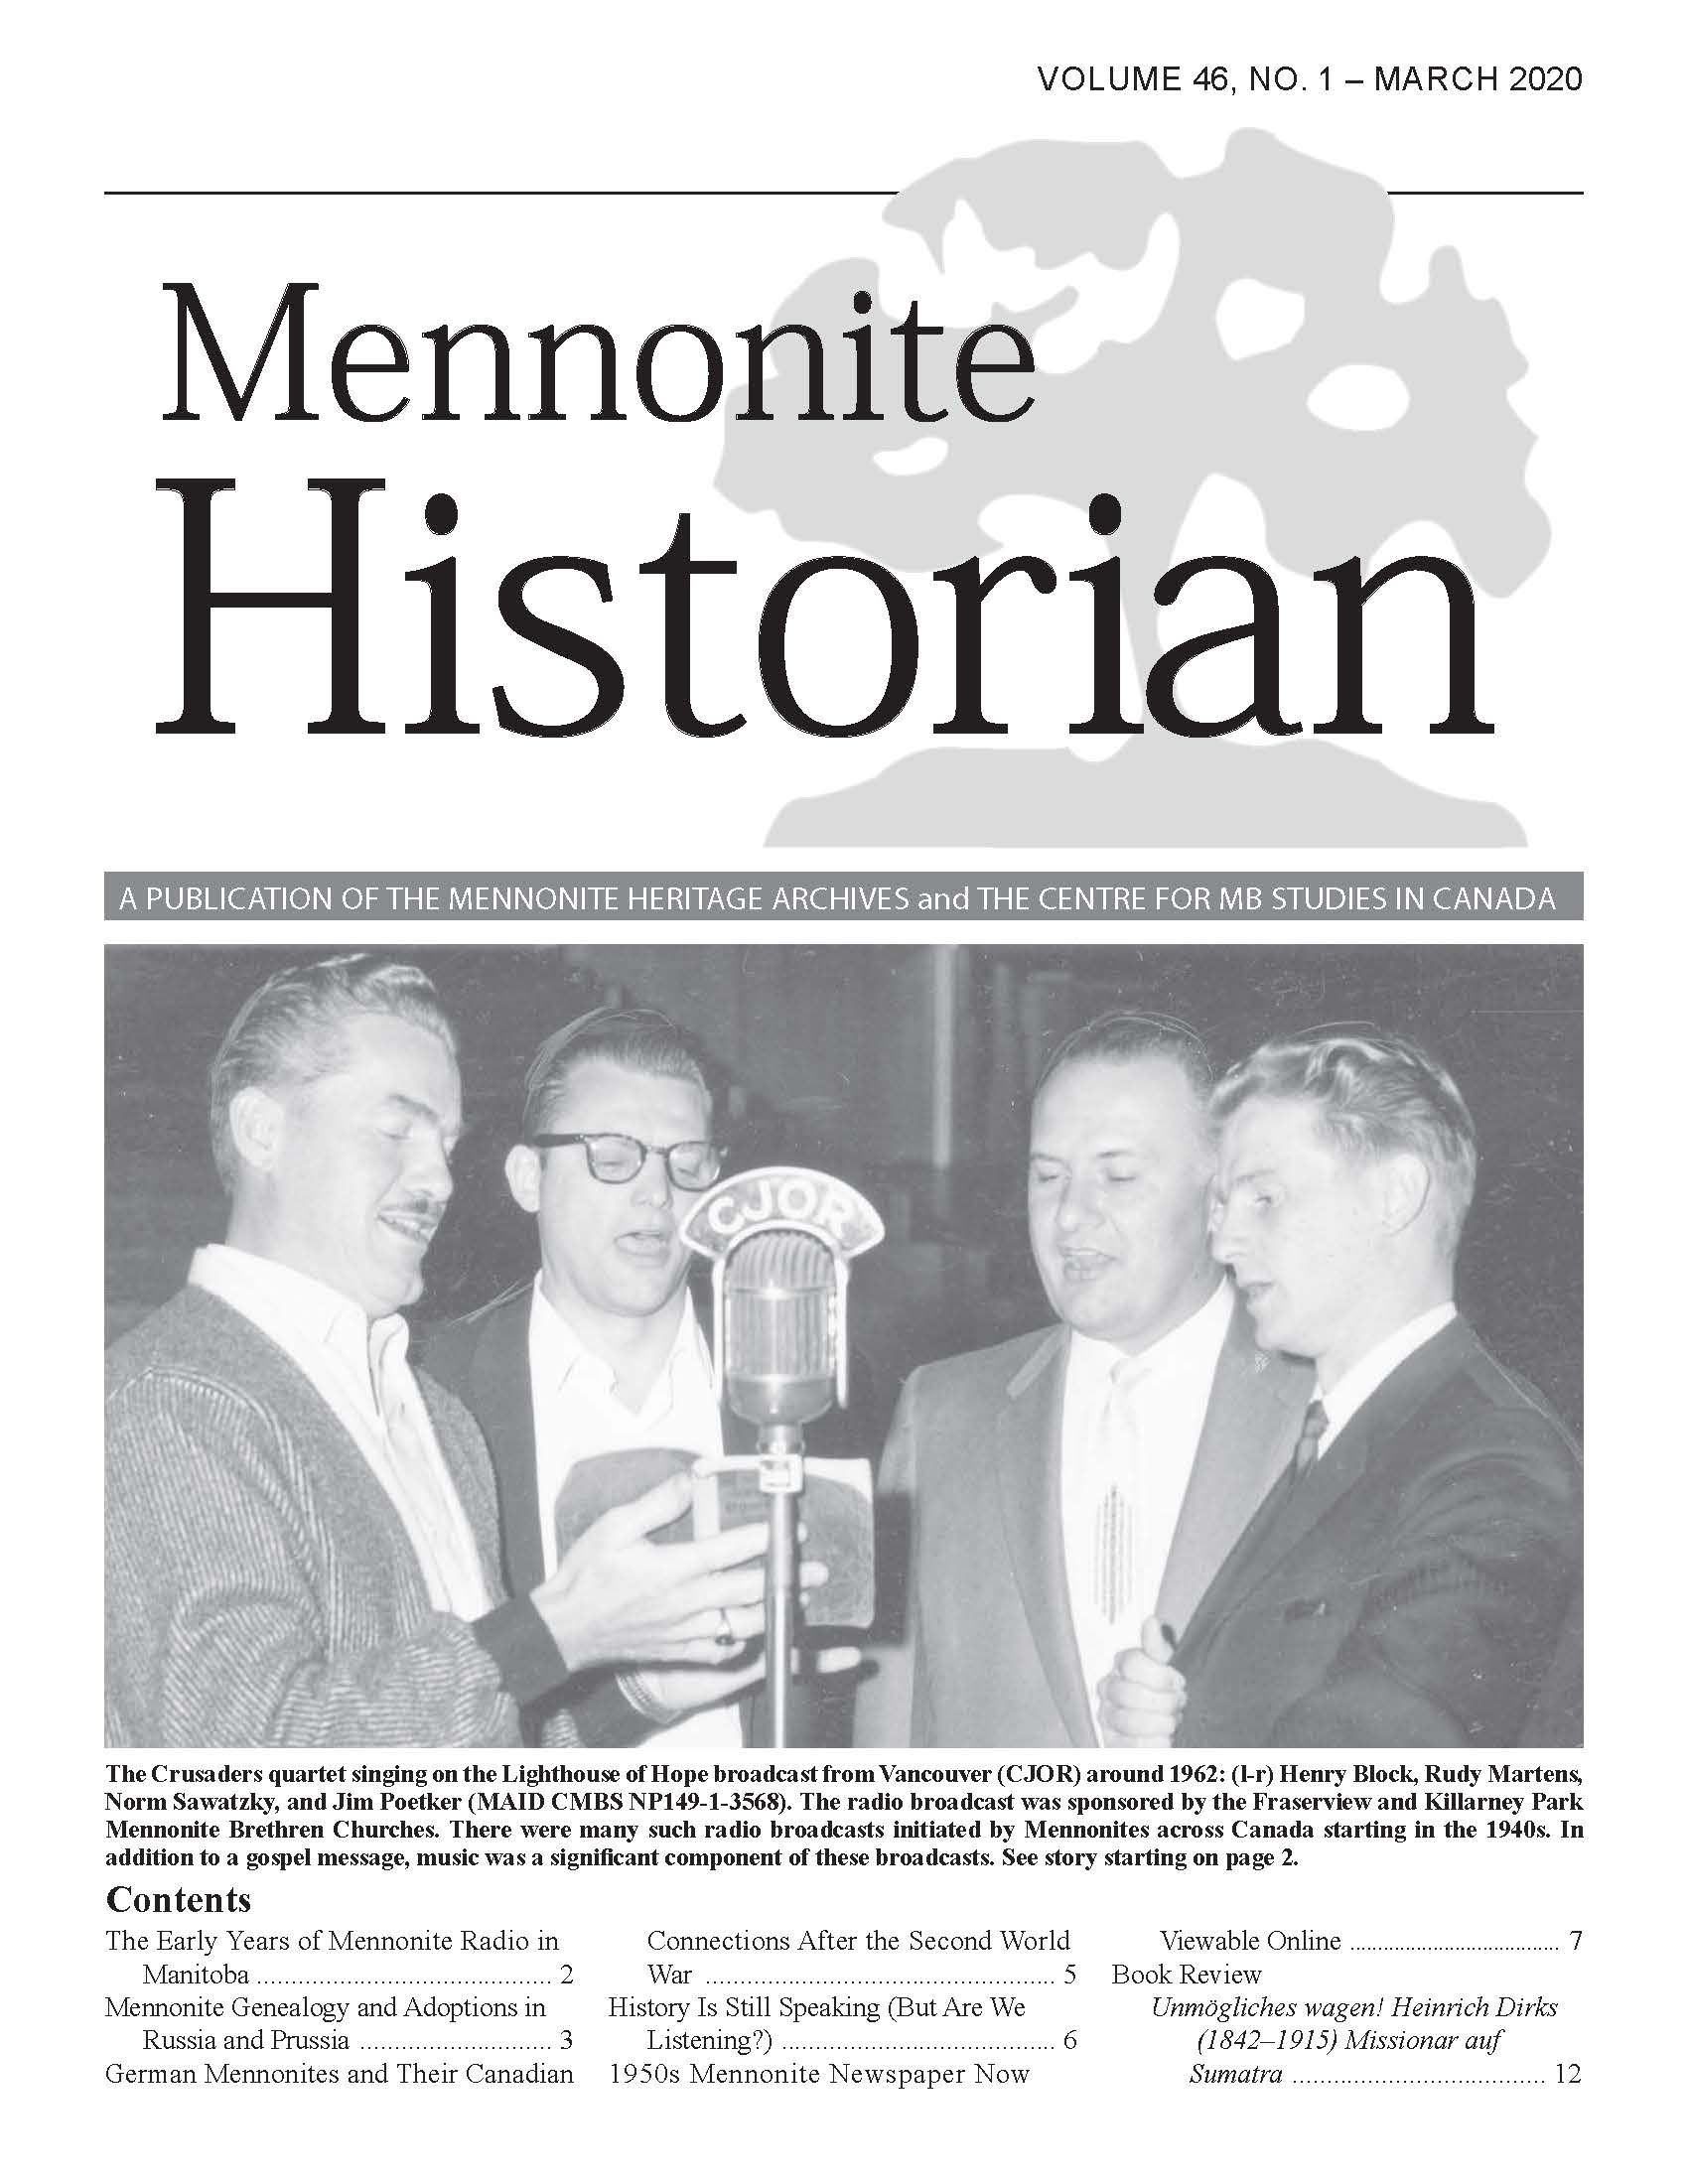 Mennonite Historian (March 2020)